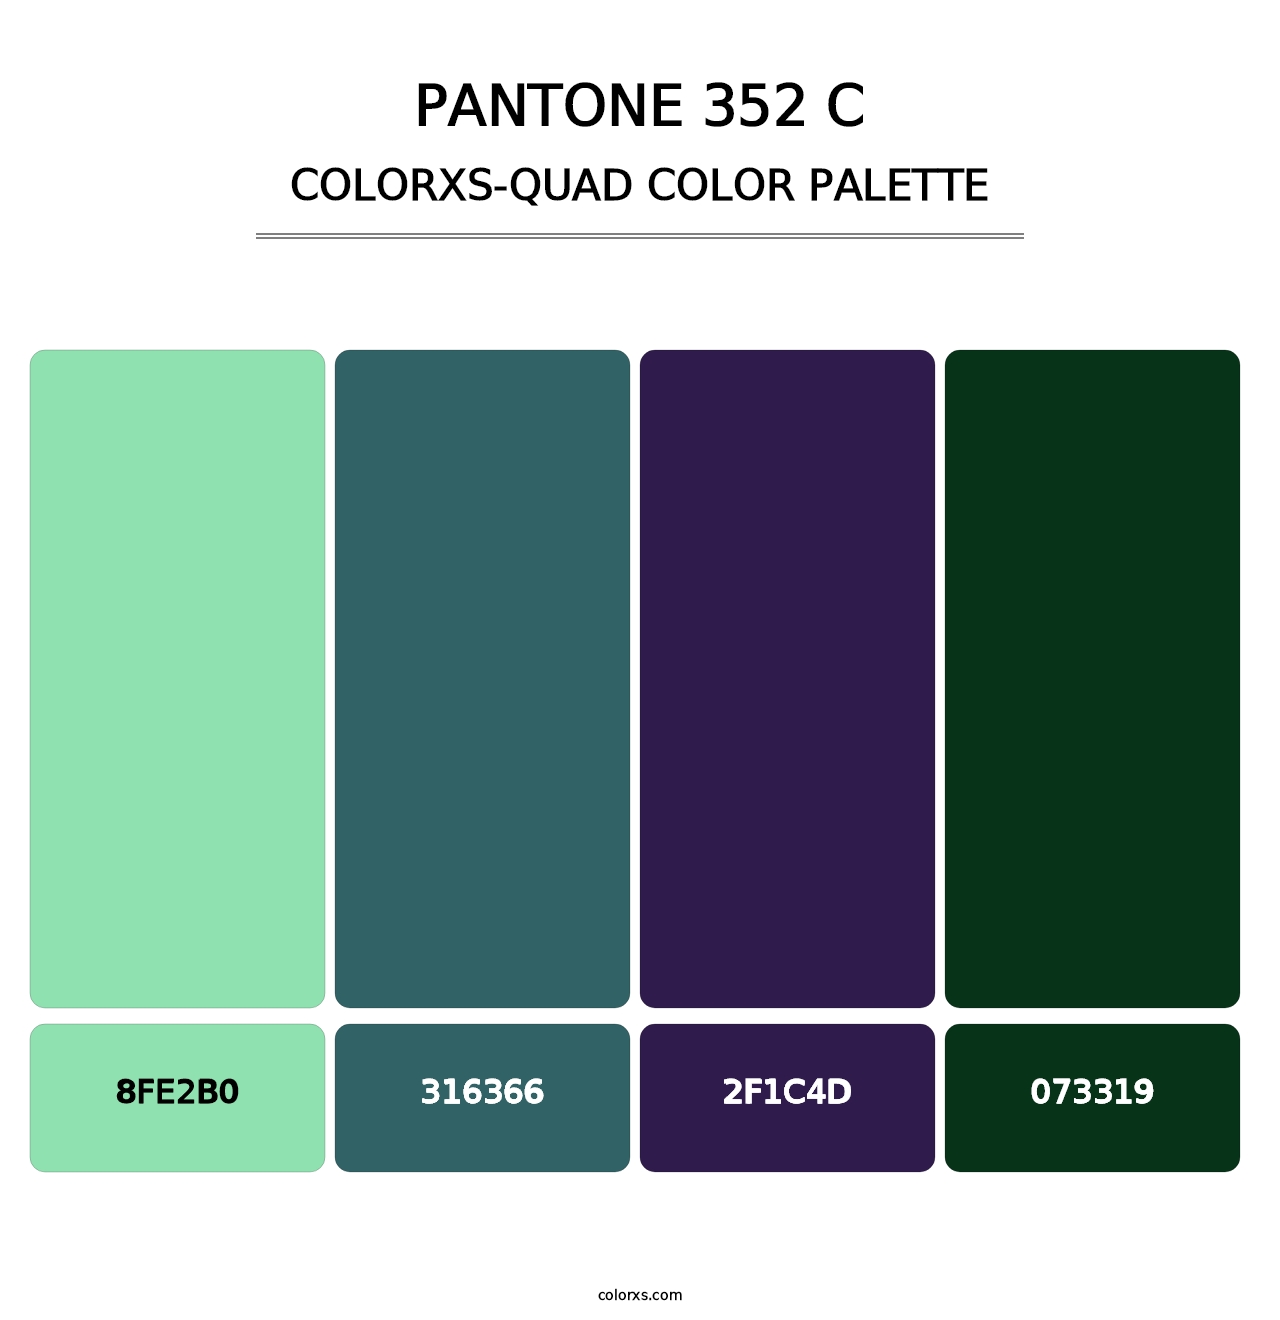 PANTONE 352 C - Colorxs Quad Palette